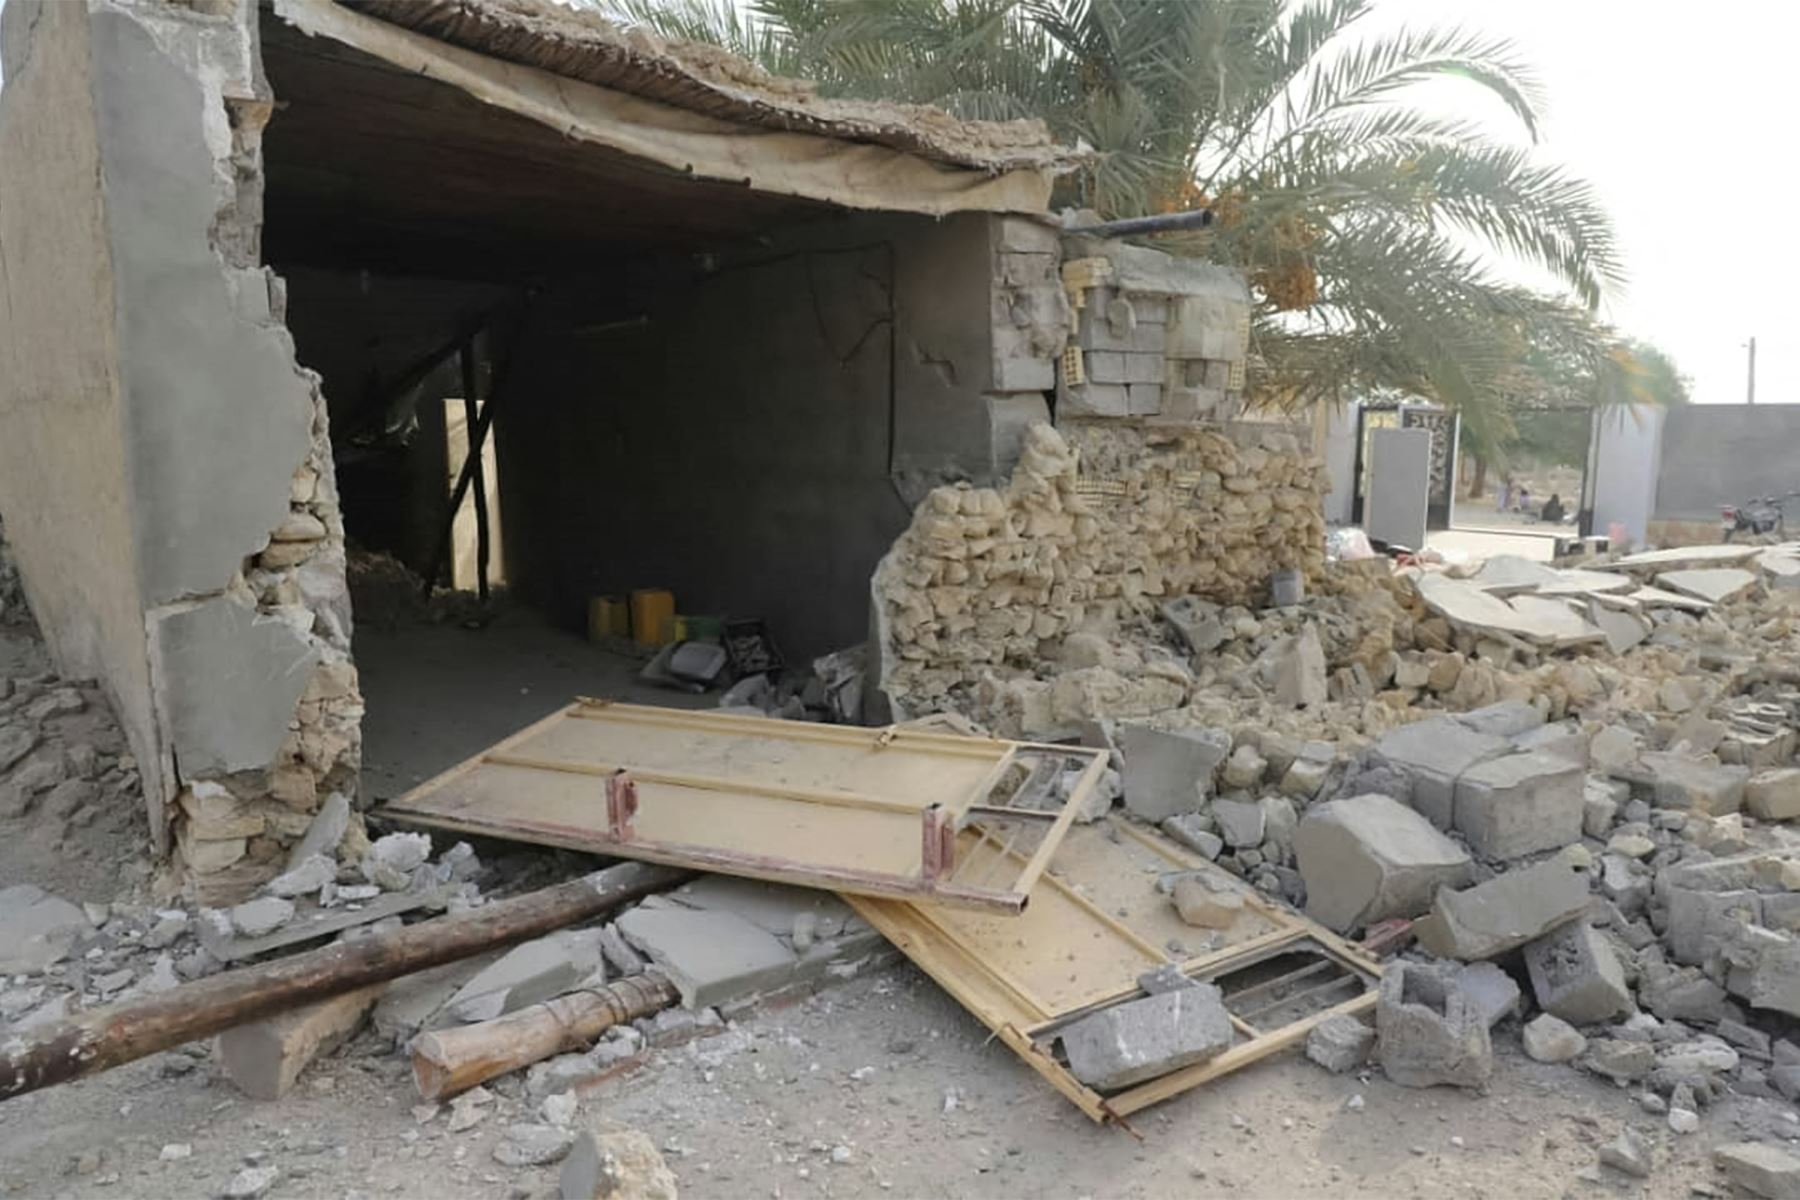 Imagen muestra una vista de la destrucción después de un terremoto de magnitud 6.0 en la aldea de Sayeh Khosh, en la provincia de Hormozgan, en el sur de Irán. Foto: AFP.